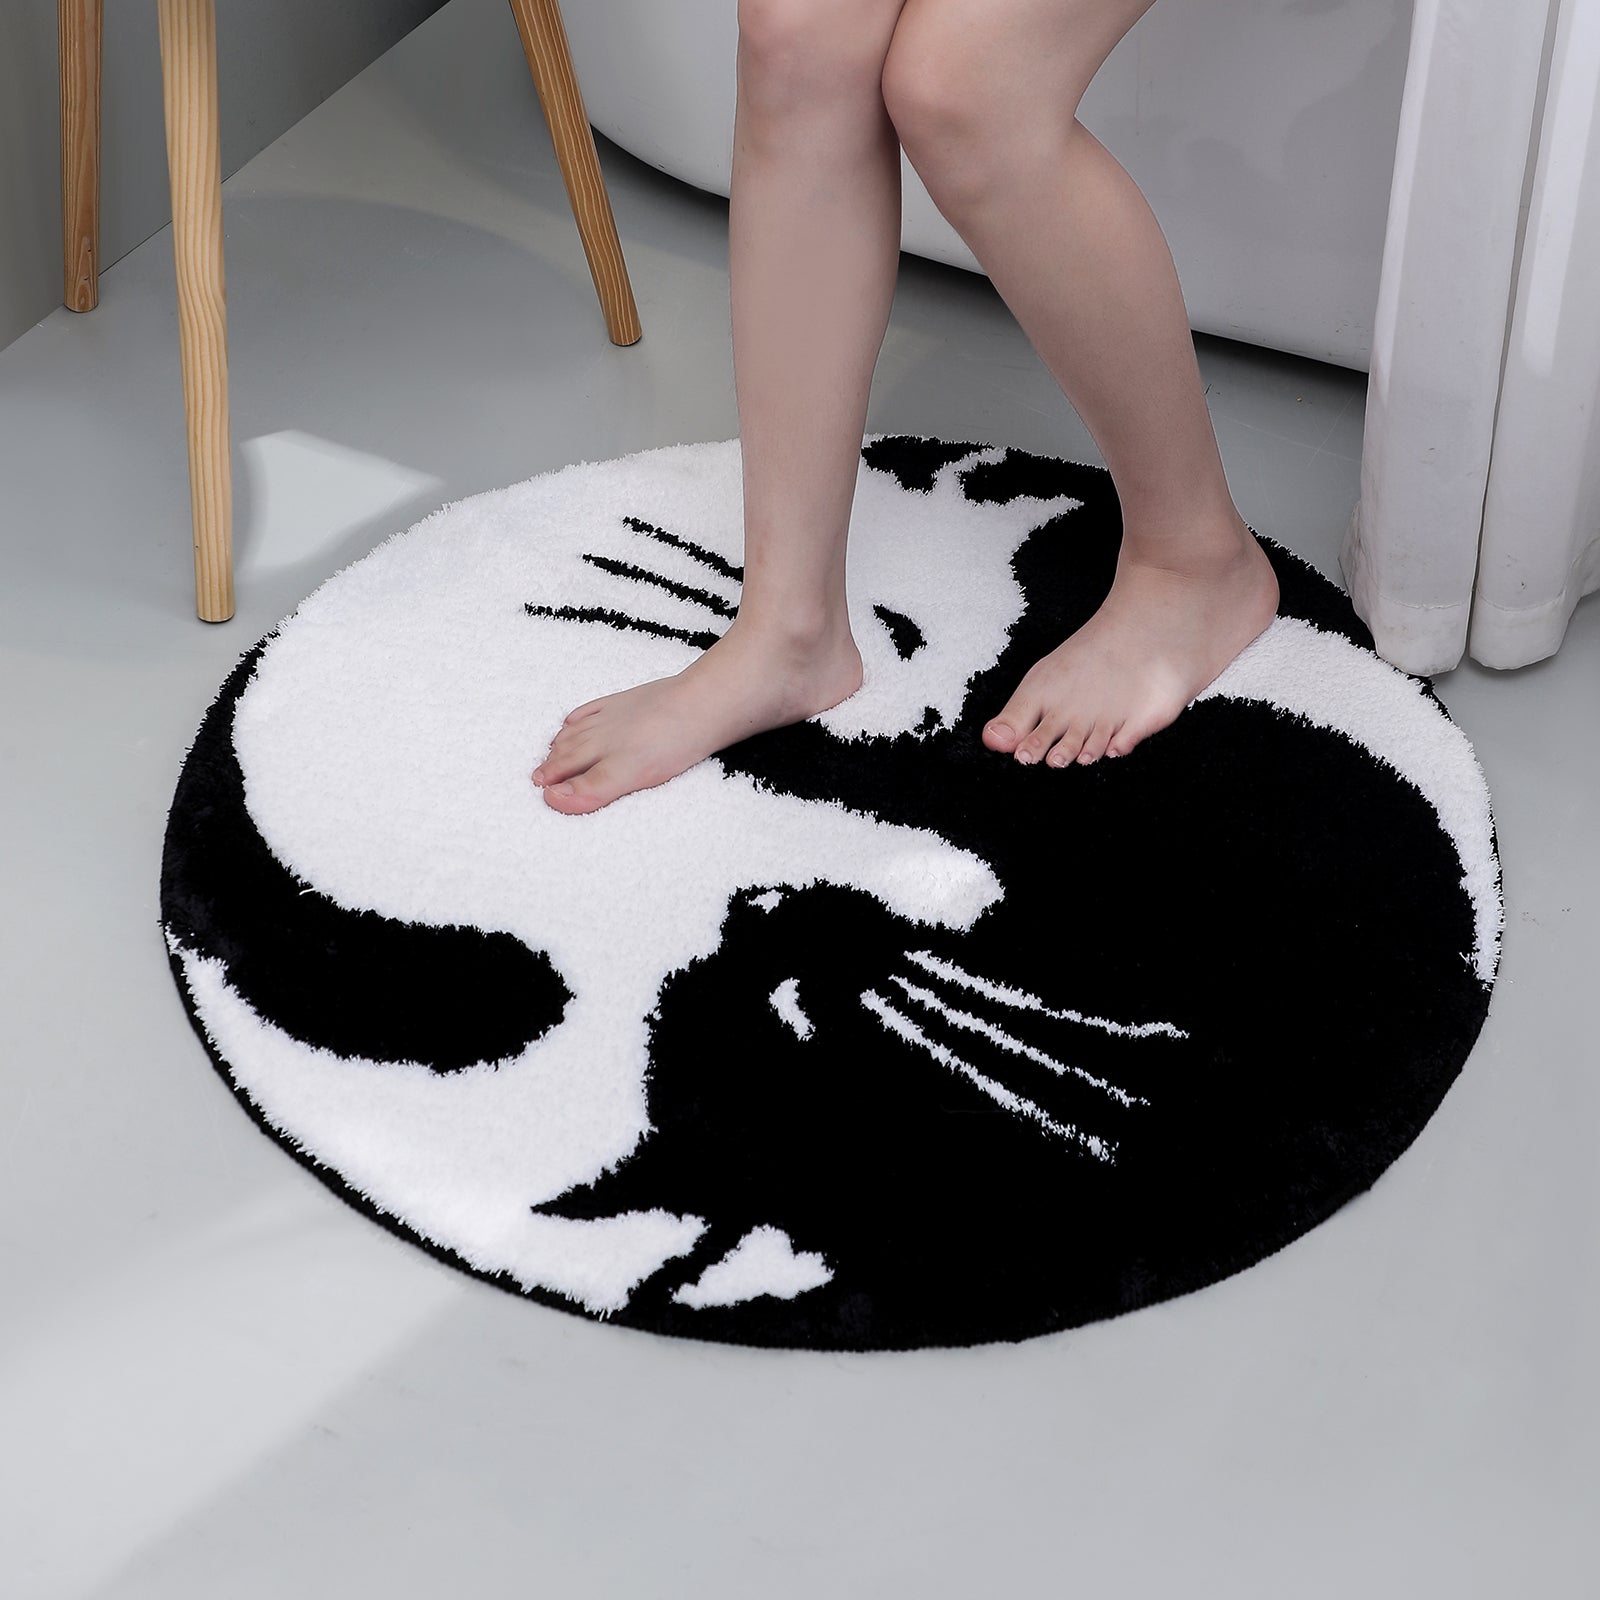 Cartoon Cat Floor Mat - Super Kitty Cats